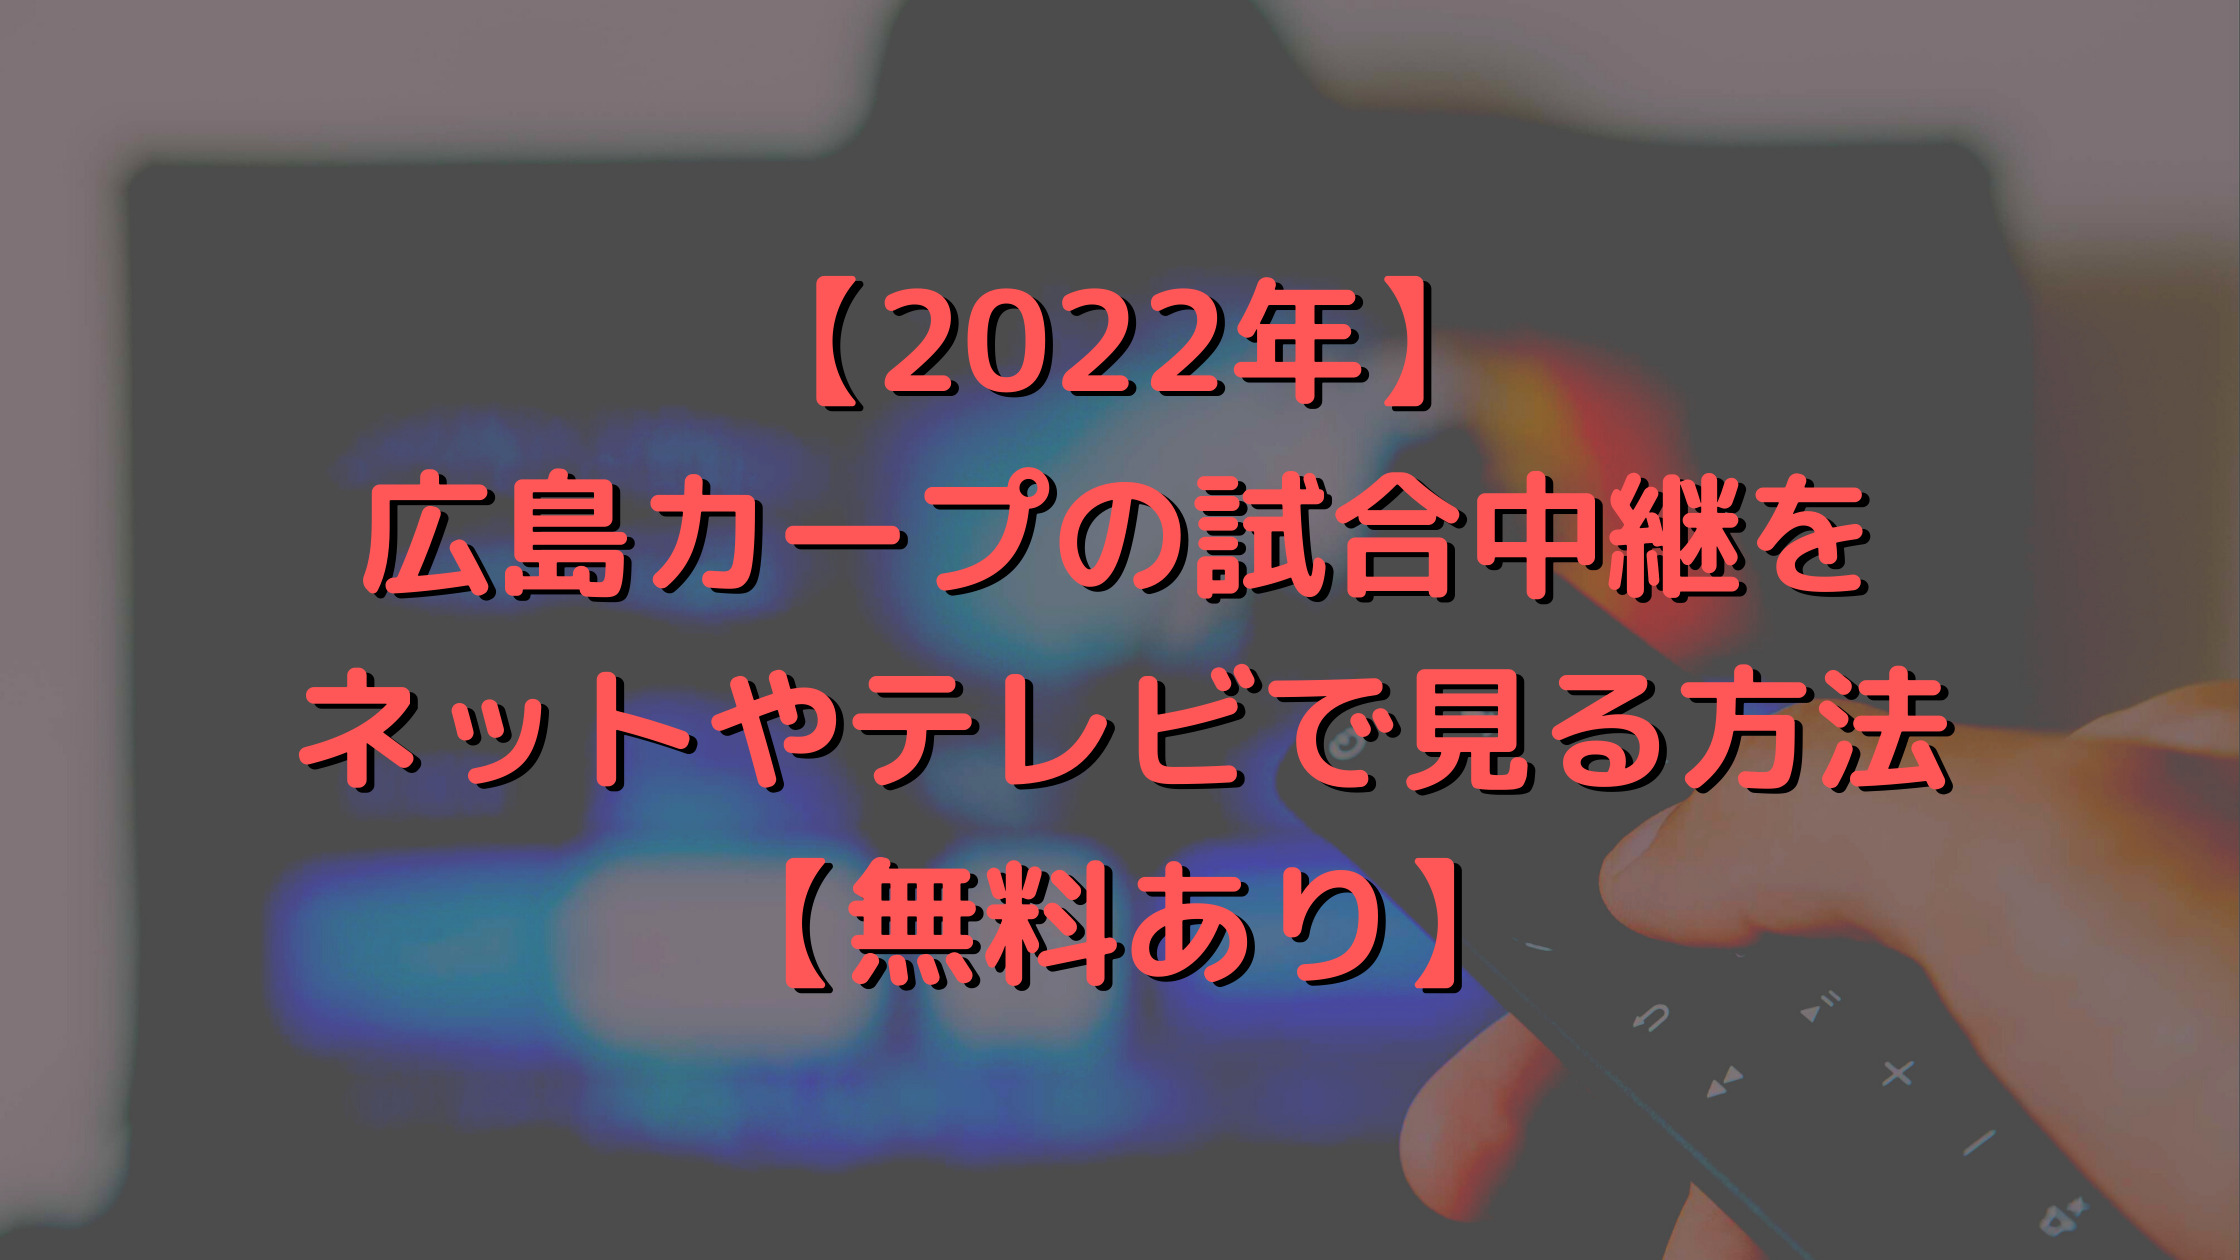 【2022年】広島カープの試合中継をネットやテレビで見る方法【無料あり】